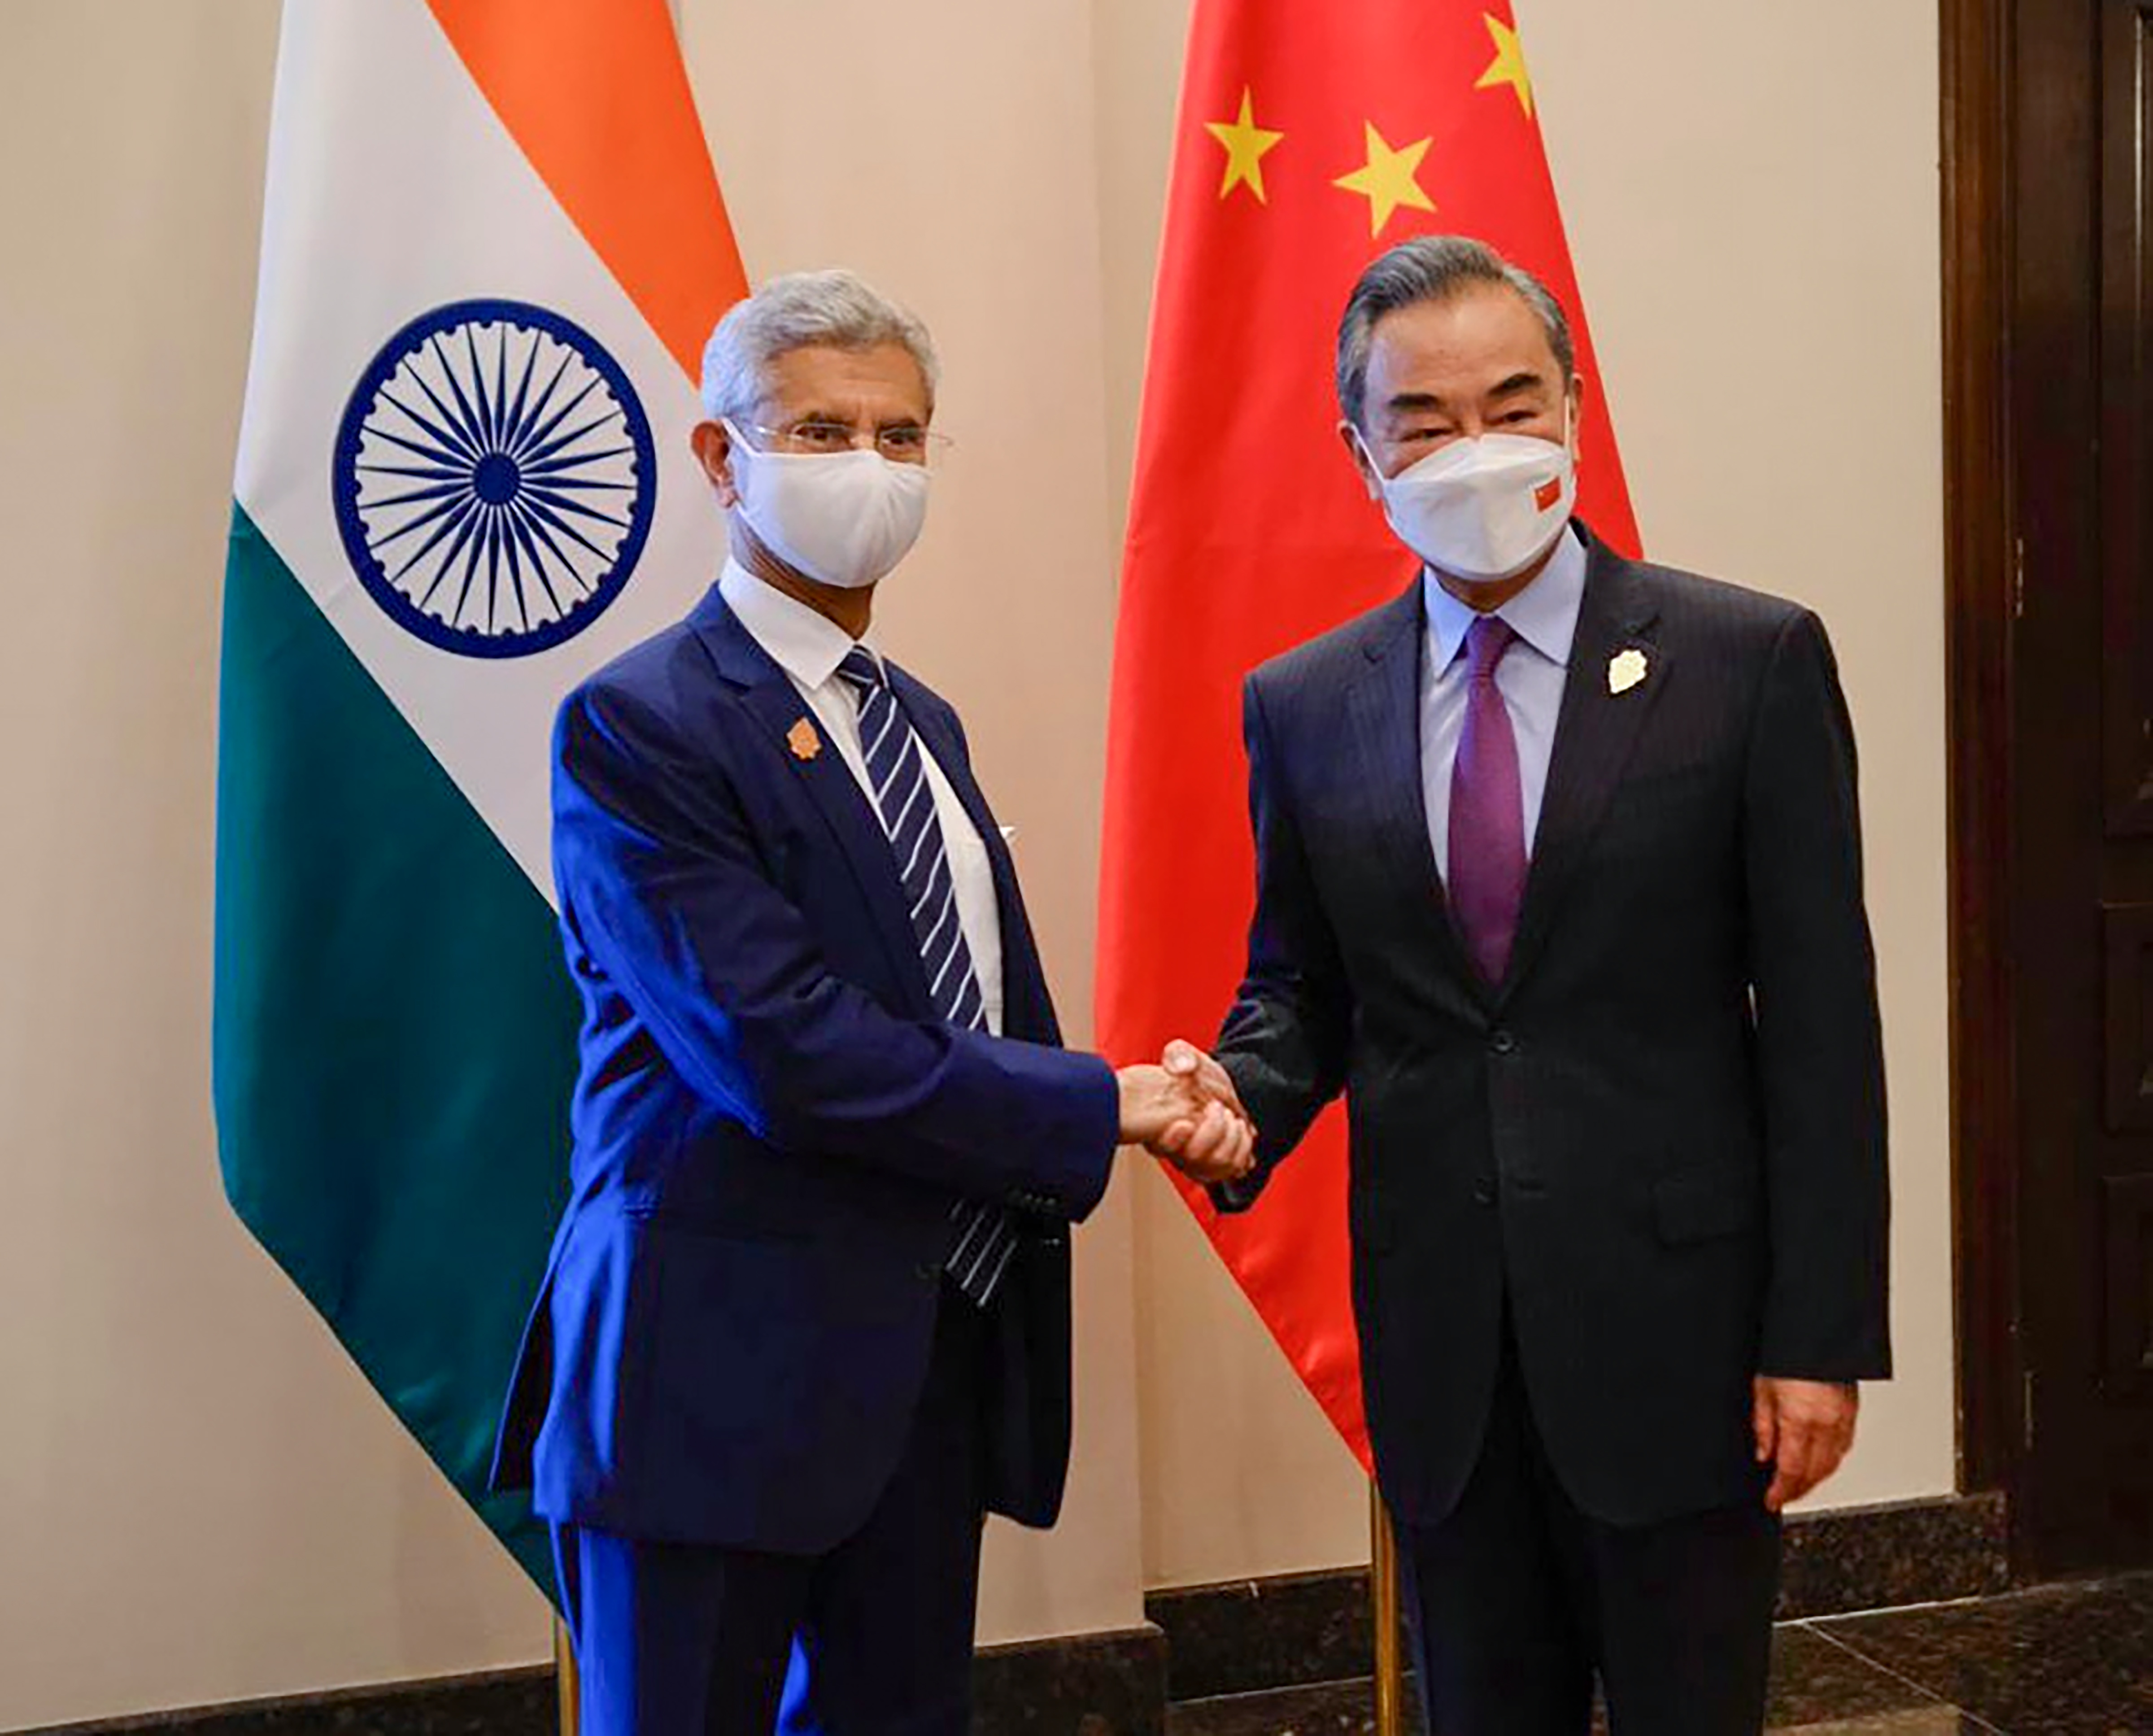 India-China ties: No breakthrough after Wang, Jaishankar discuss border, students' re-entry